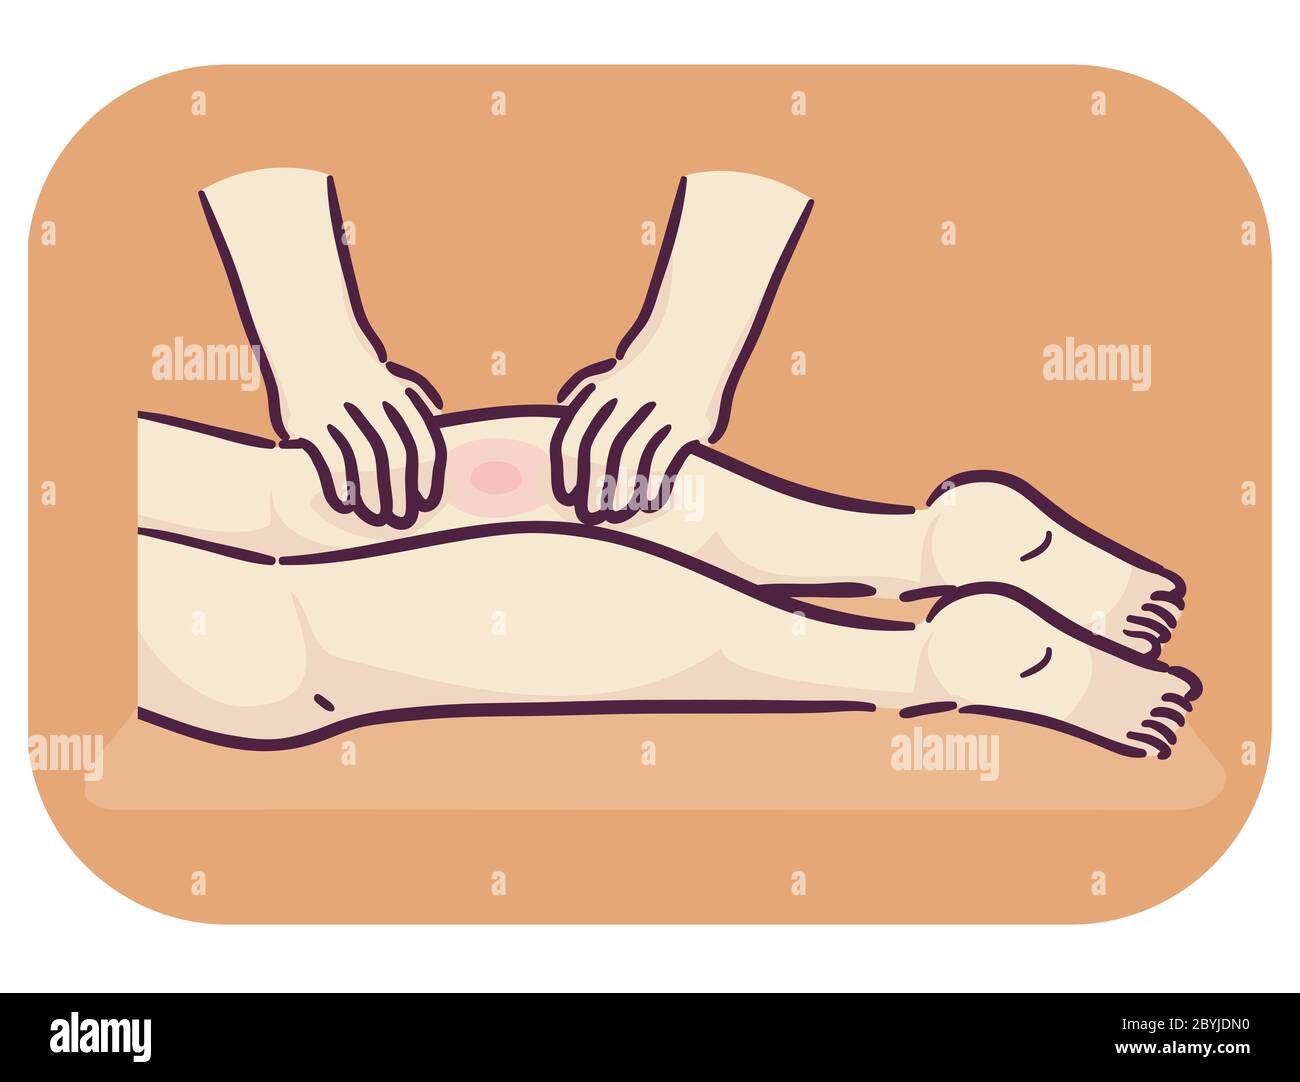 Ilustración de manos de masaje terapeuta masajeando piernas con dolor muscular Foto de stock